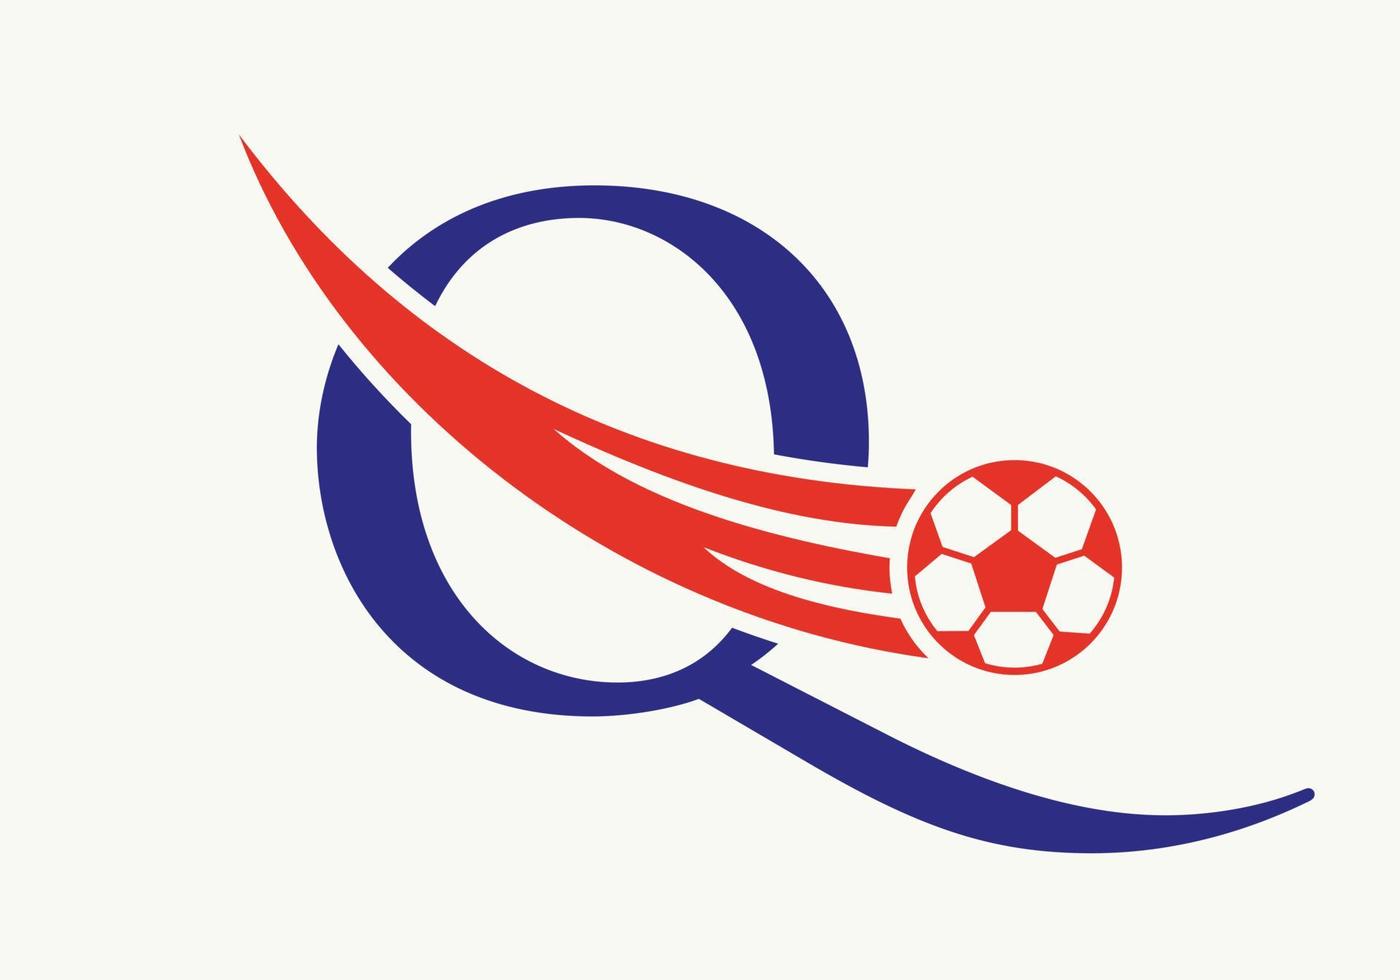 brev q fotboll fotboll logotyp. fotboll klubb symbol begrepp av fotboll team ikon vektor